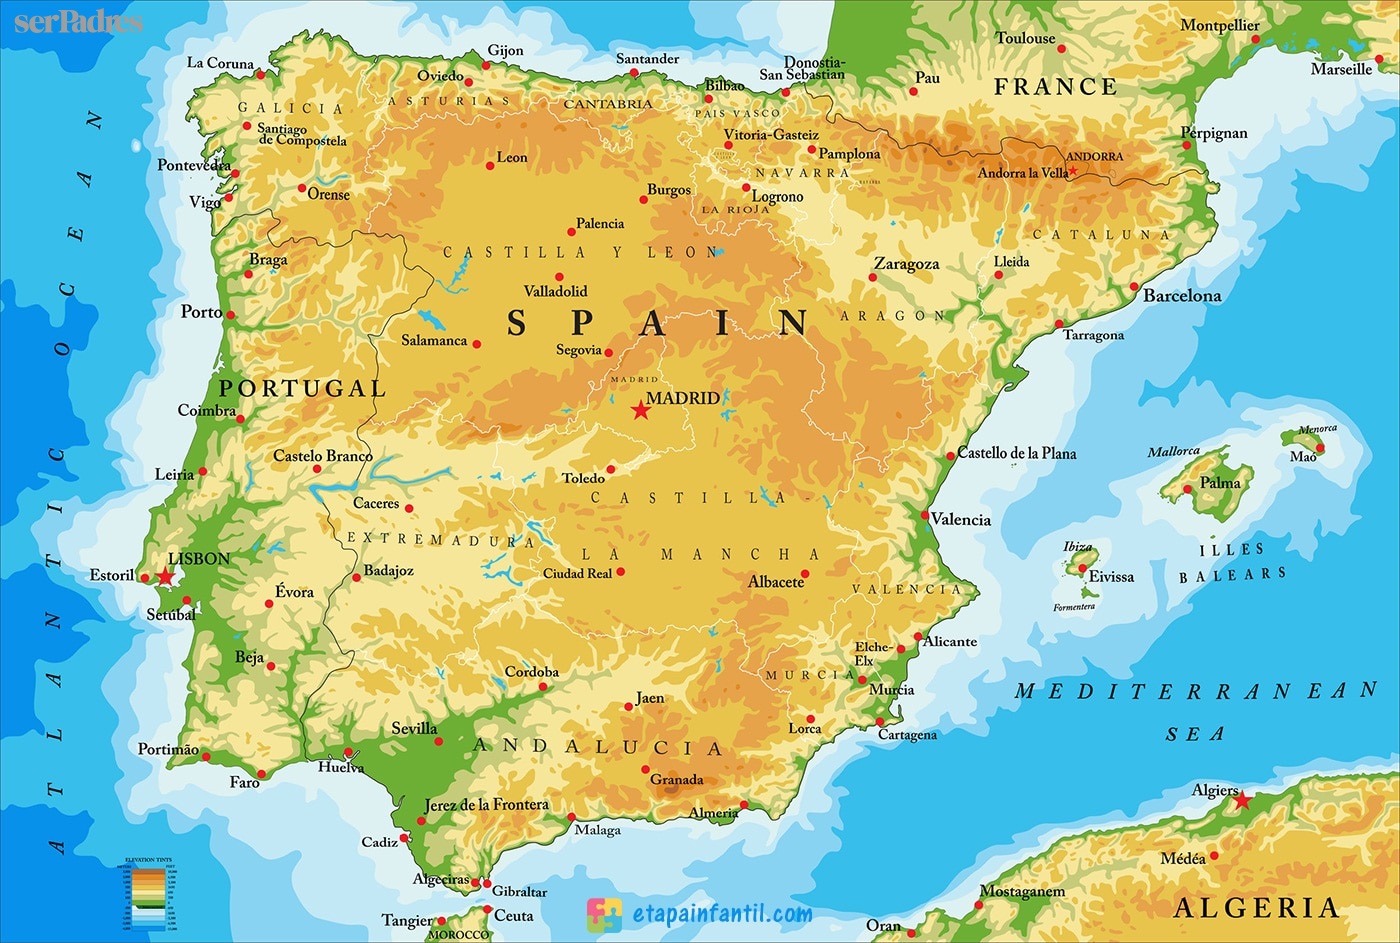 Siete mapas de España para descargar e imprimir como recurso didáctico